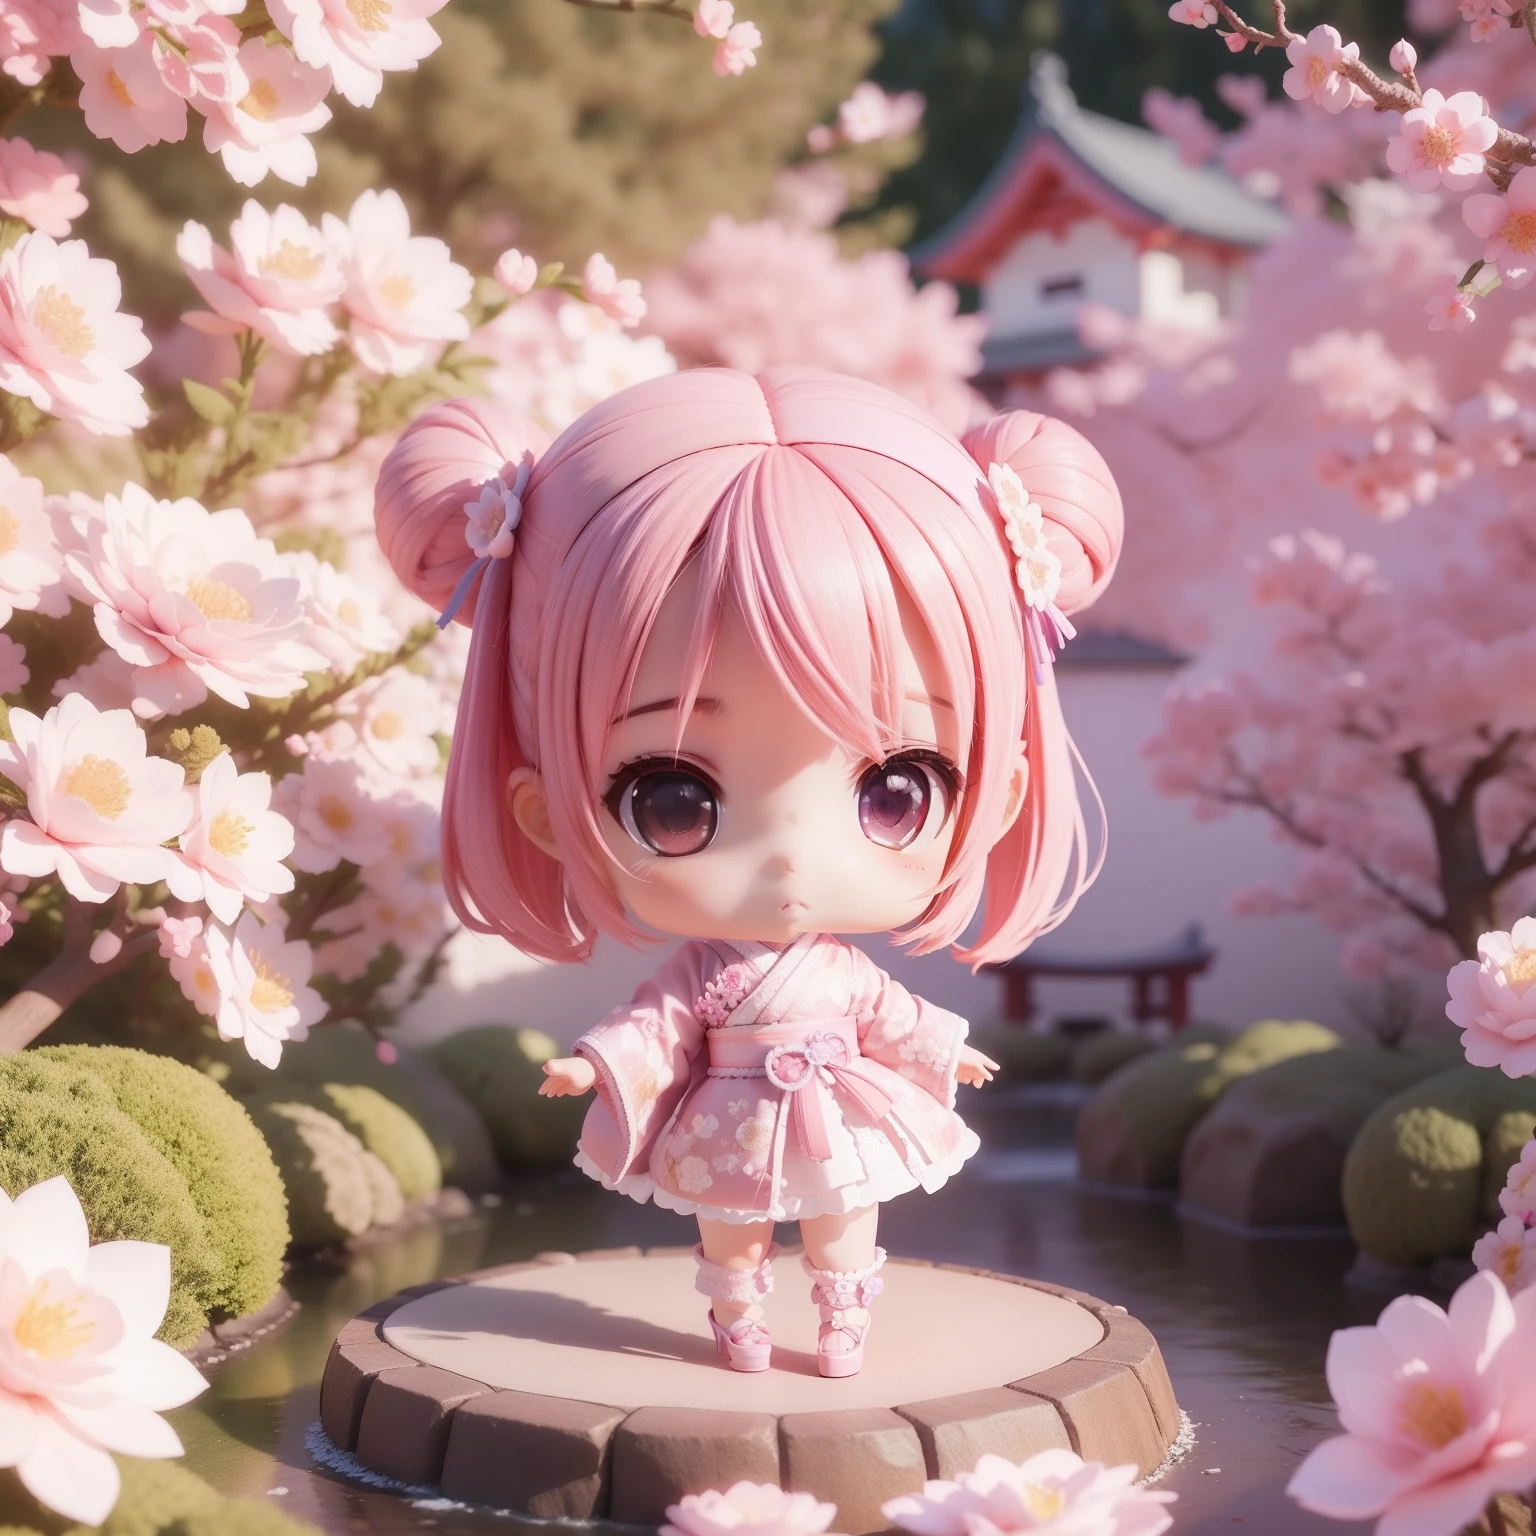 Süßer Baby-Chibi-Anime,(((Chibi 3D))) (beste Qualität) (Masterpreis)、Rosa und lila Kimono、Weiße High Heels aus Spitze mit gestricktem Blumenmotiv、japanischer Garten